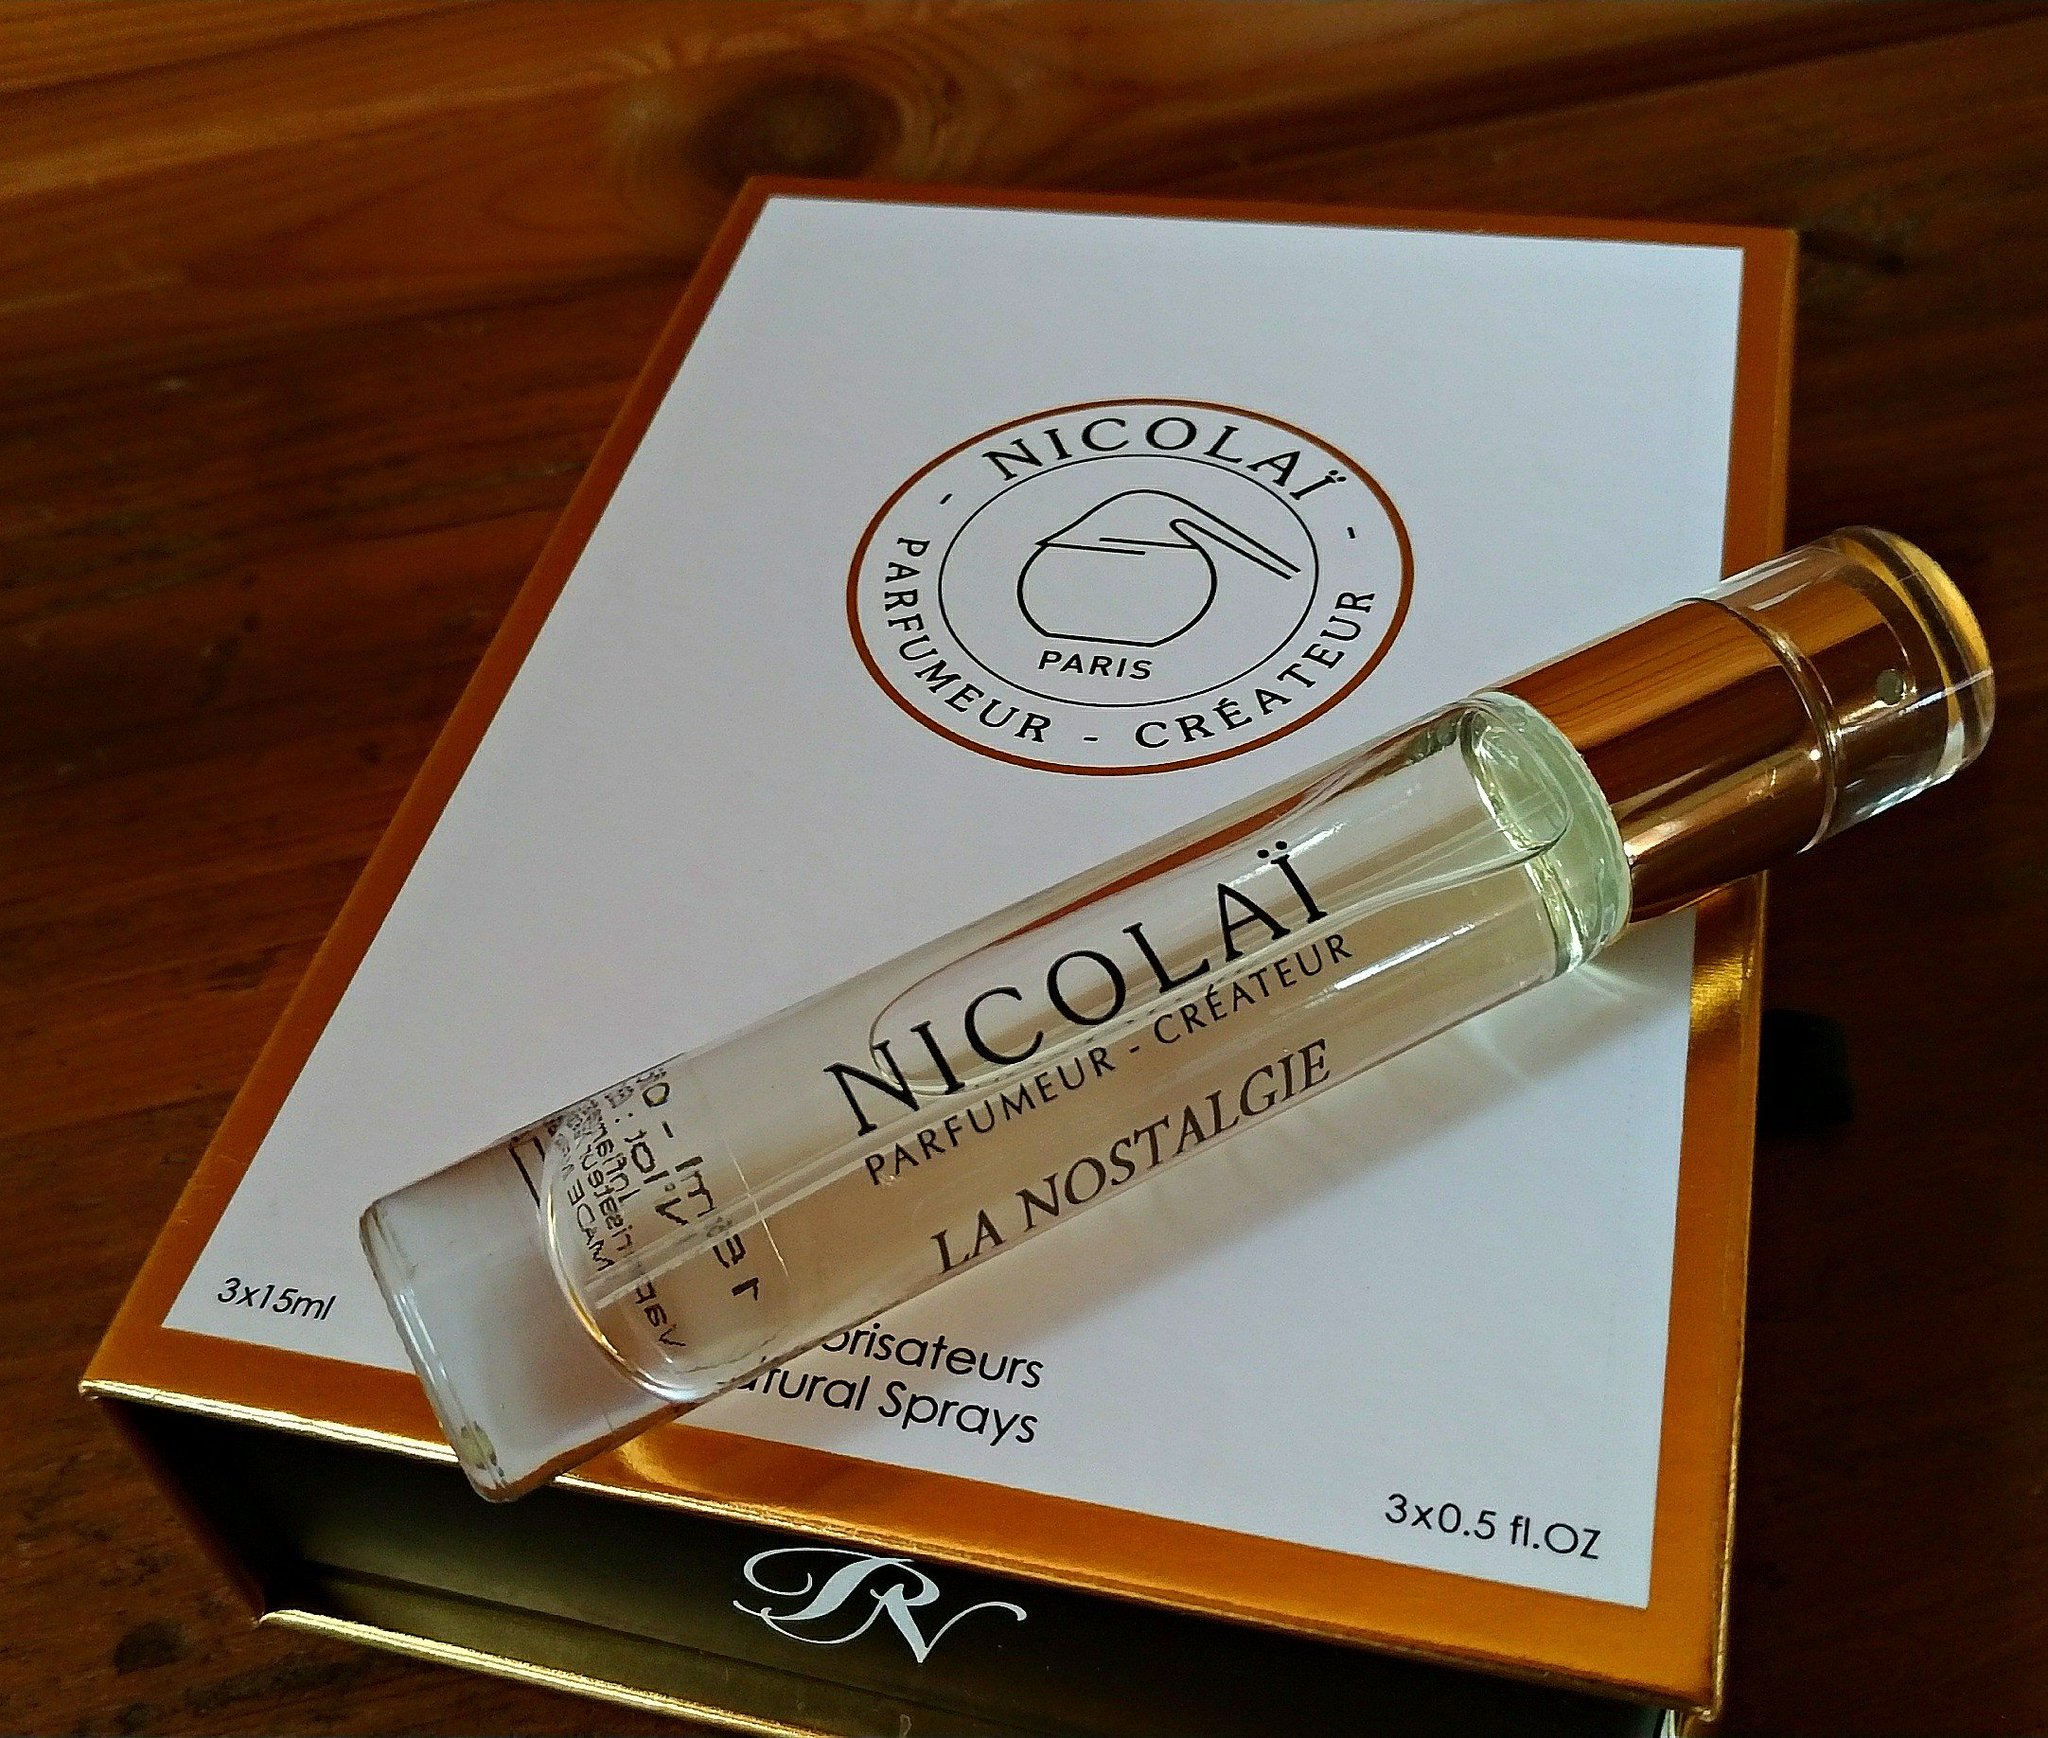 香水手帖@perfume841 on Twitter: "今日はニコライのラ ノスタルジー。懐古的香り古書店のような。トップの明るい